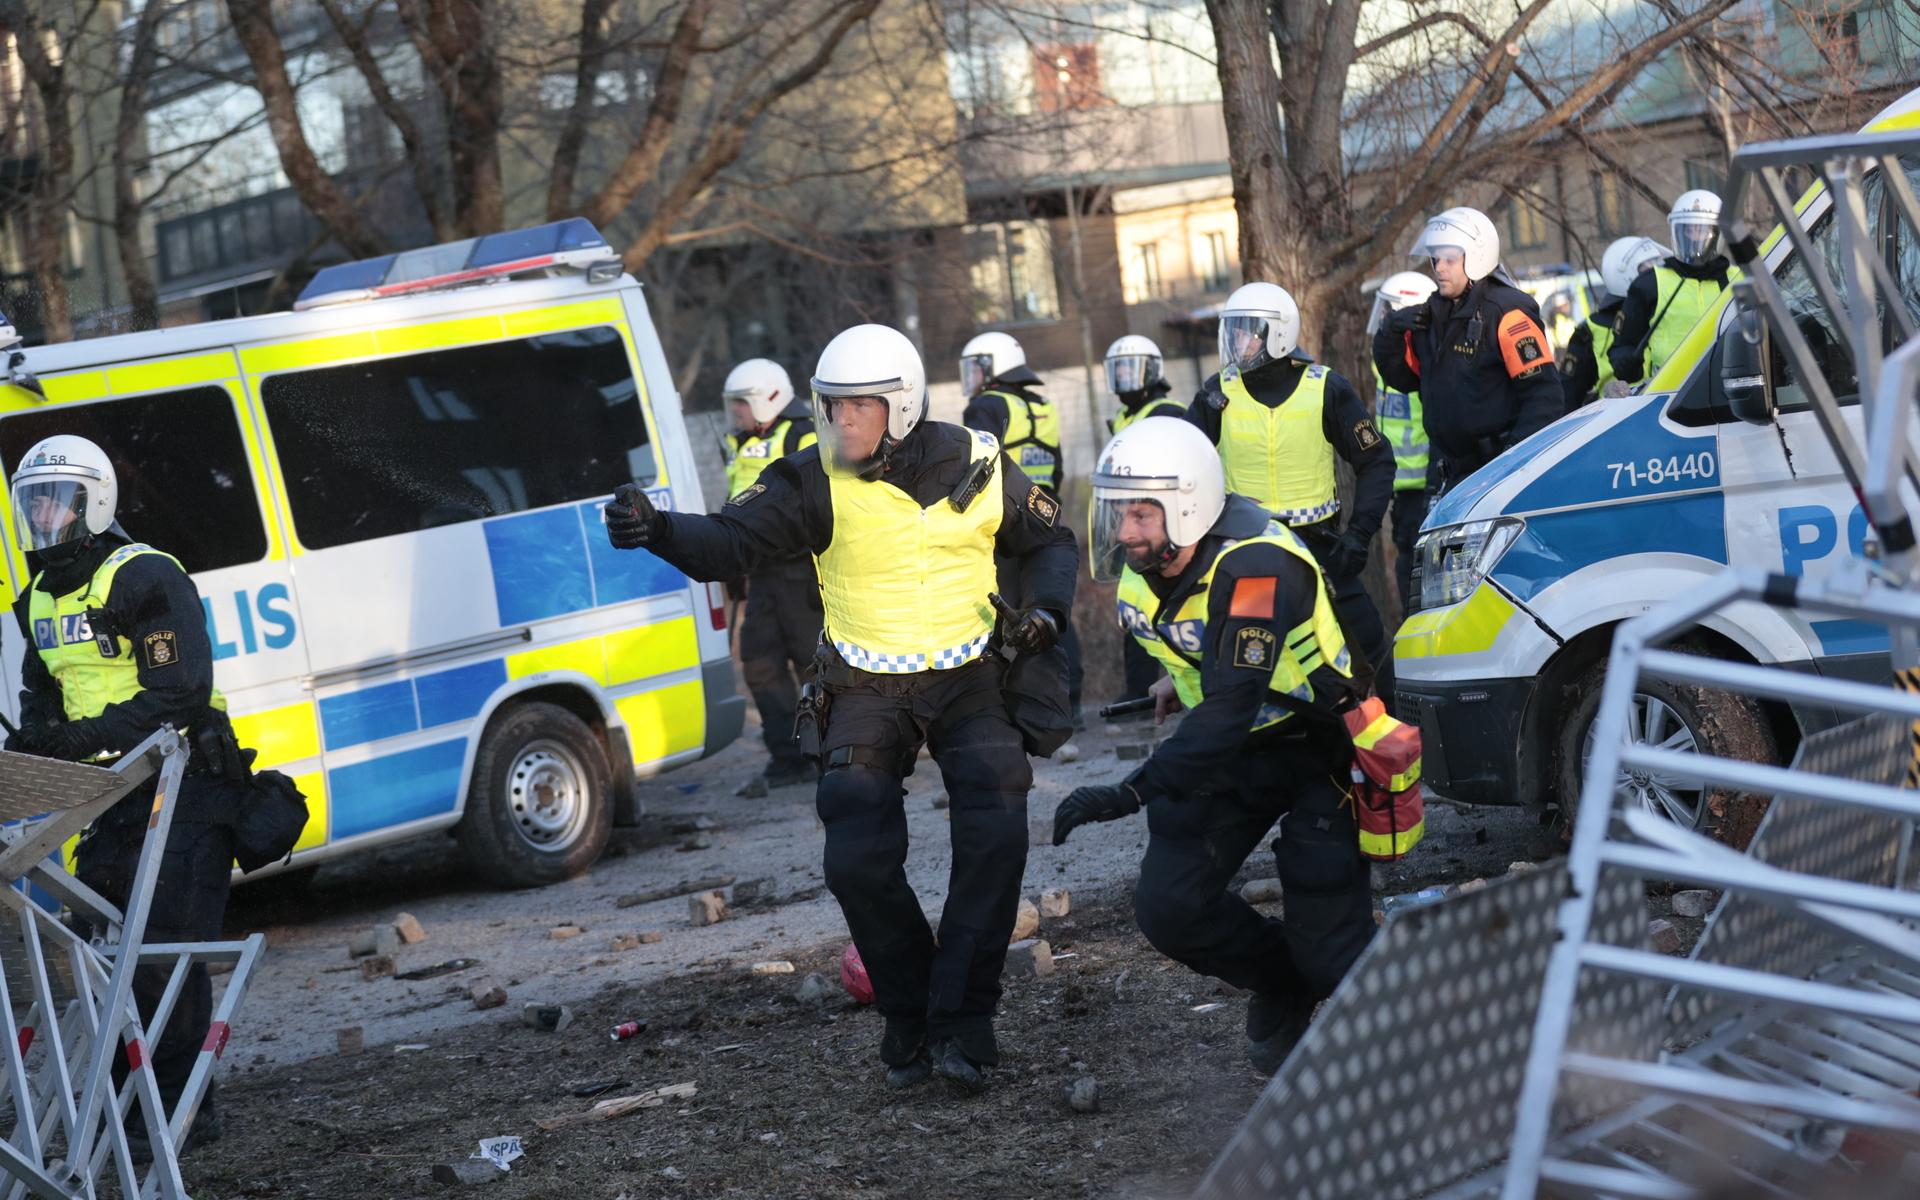 Polisen motar bort motdemonstranter som kastar sten i Sveaparken i Örebro, där Rasmus Paludan, partiledare för det danska högerextrema partiet Stram kurs, har fått tillstånd för en sammankomst på långfredagen. 